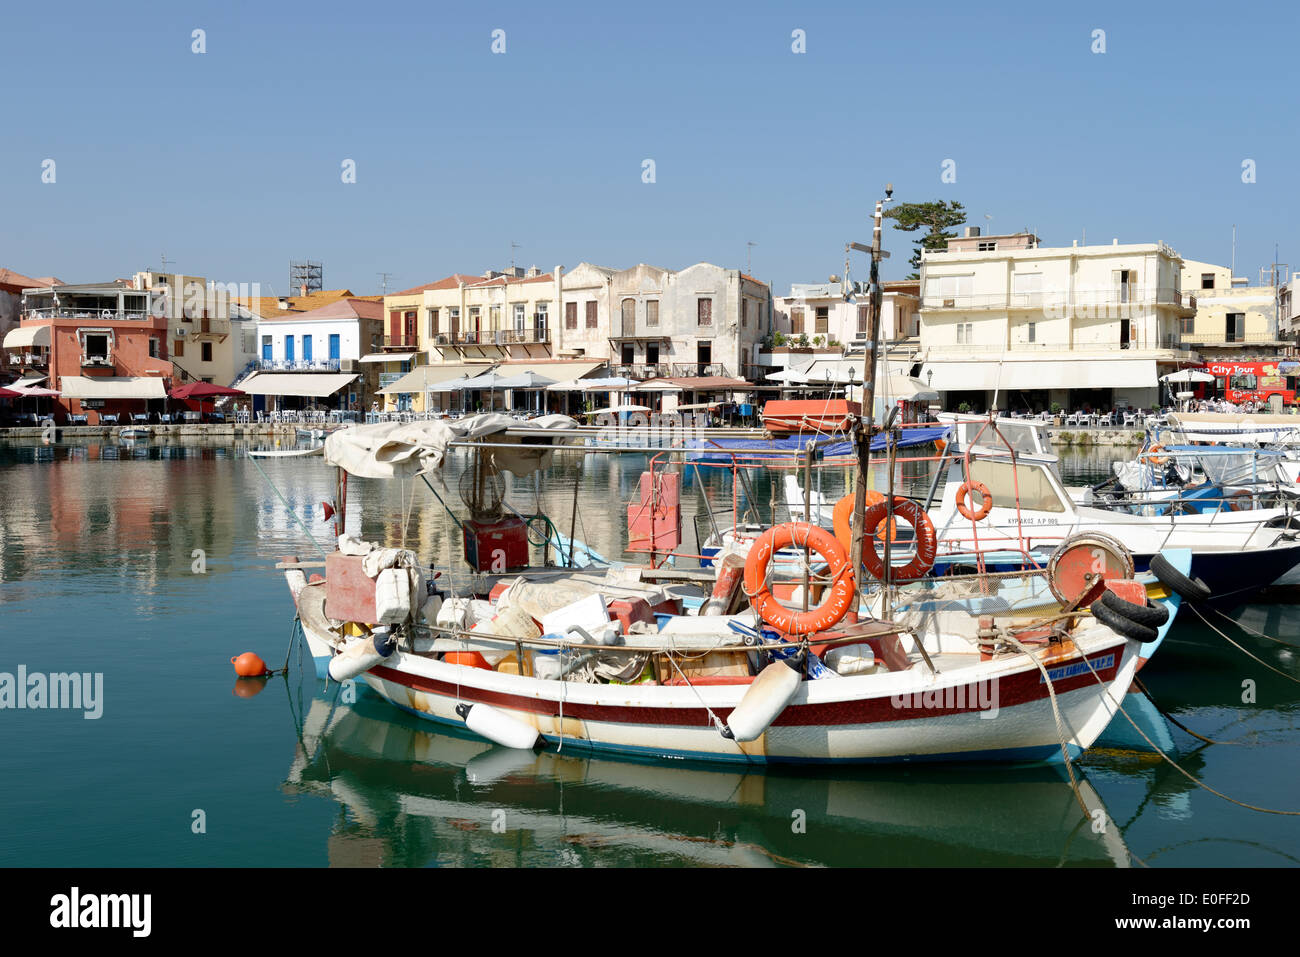 Les bateaux de pêche amarrés dans le pittoresque port vénitien de Rethymnon, la 3ème plus grande ville de l'île grecque de Crète. Banque D'Images